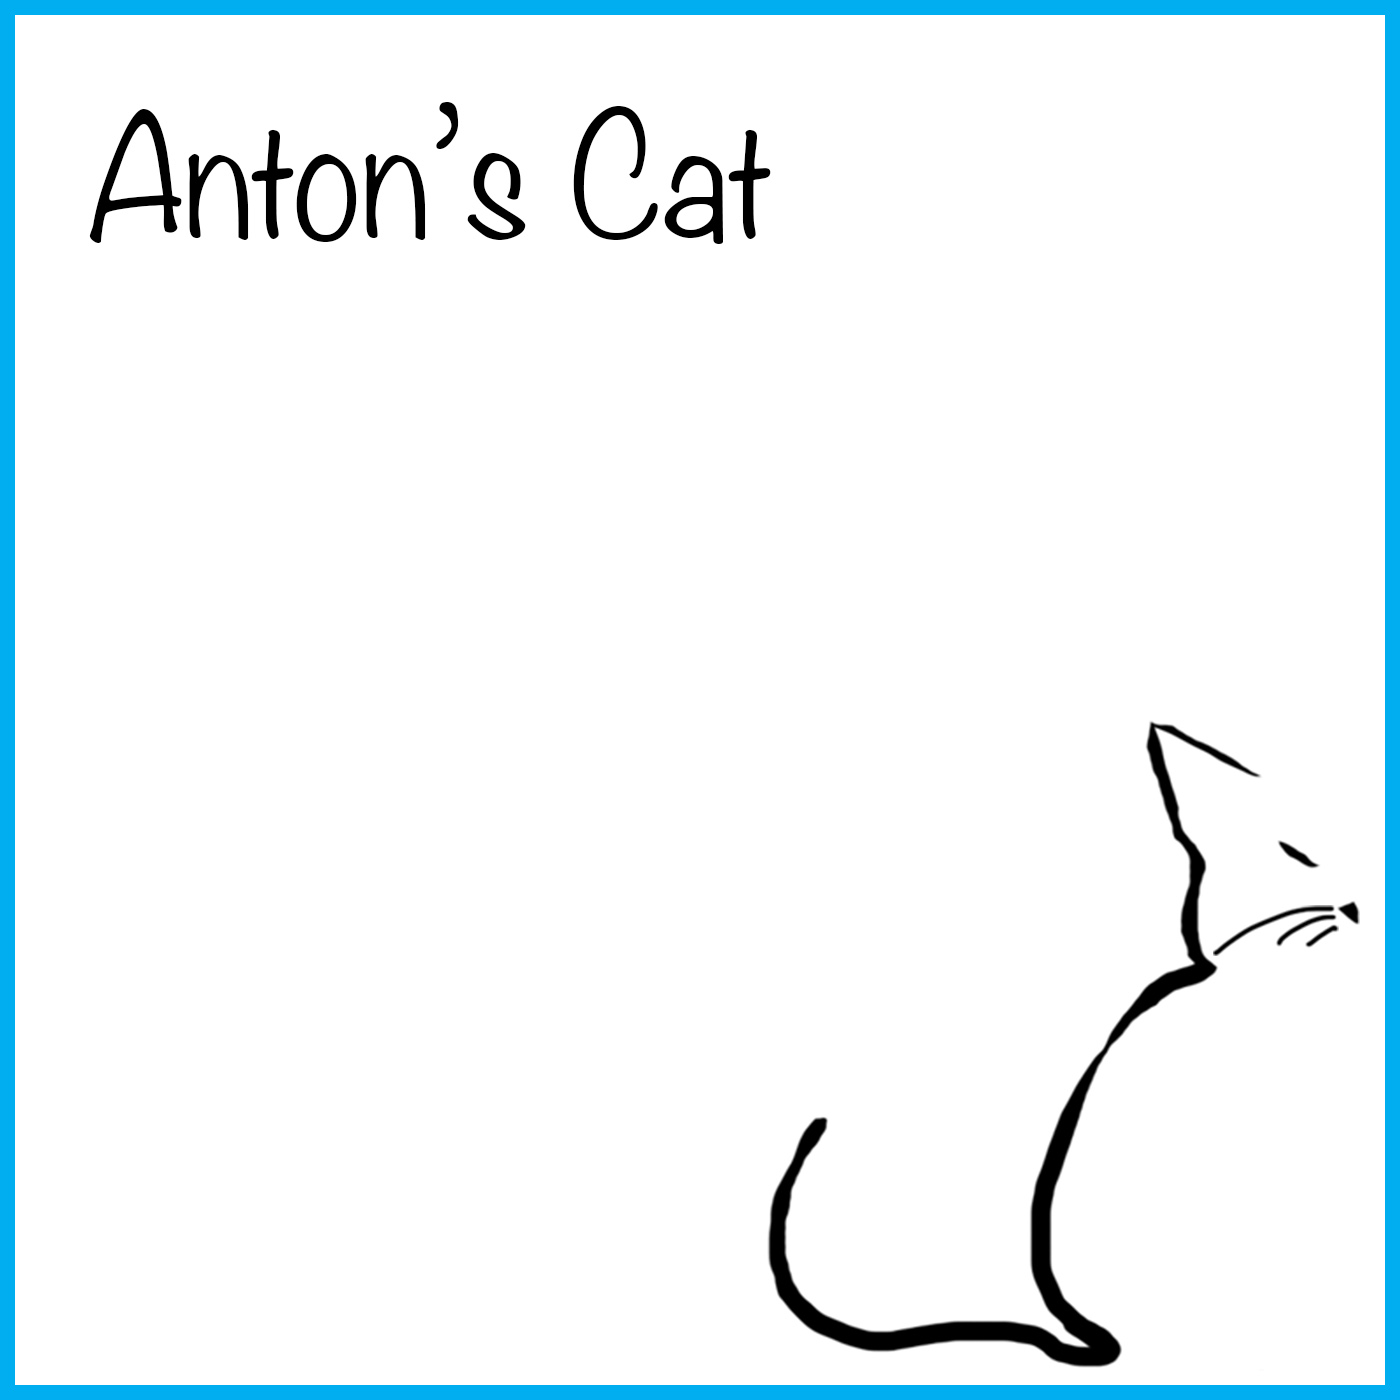 Anton's Cat